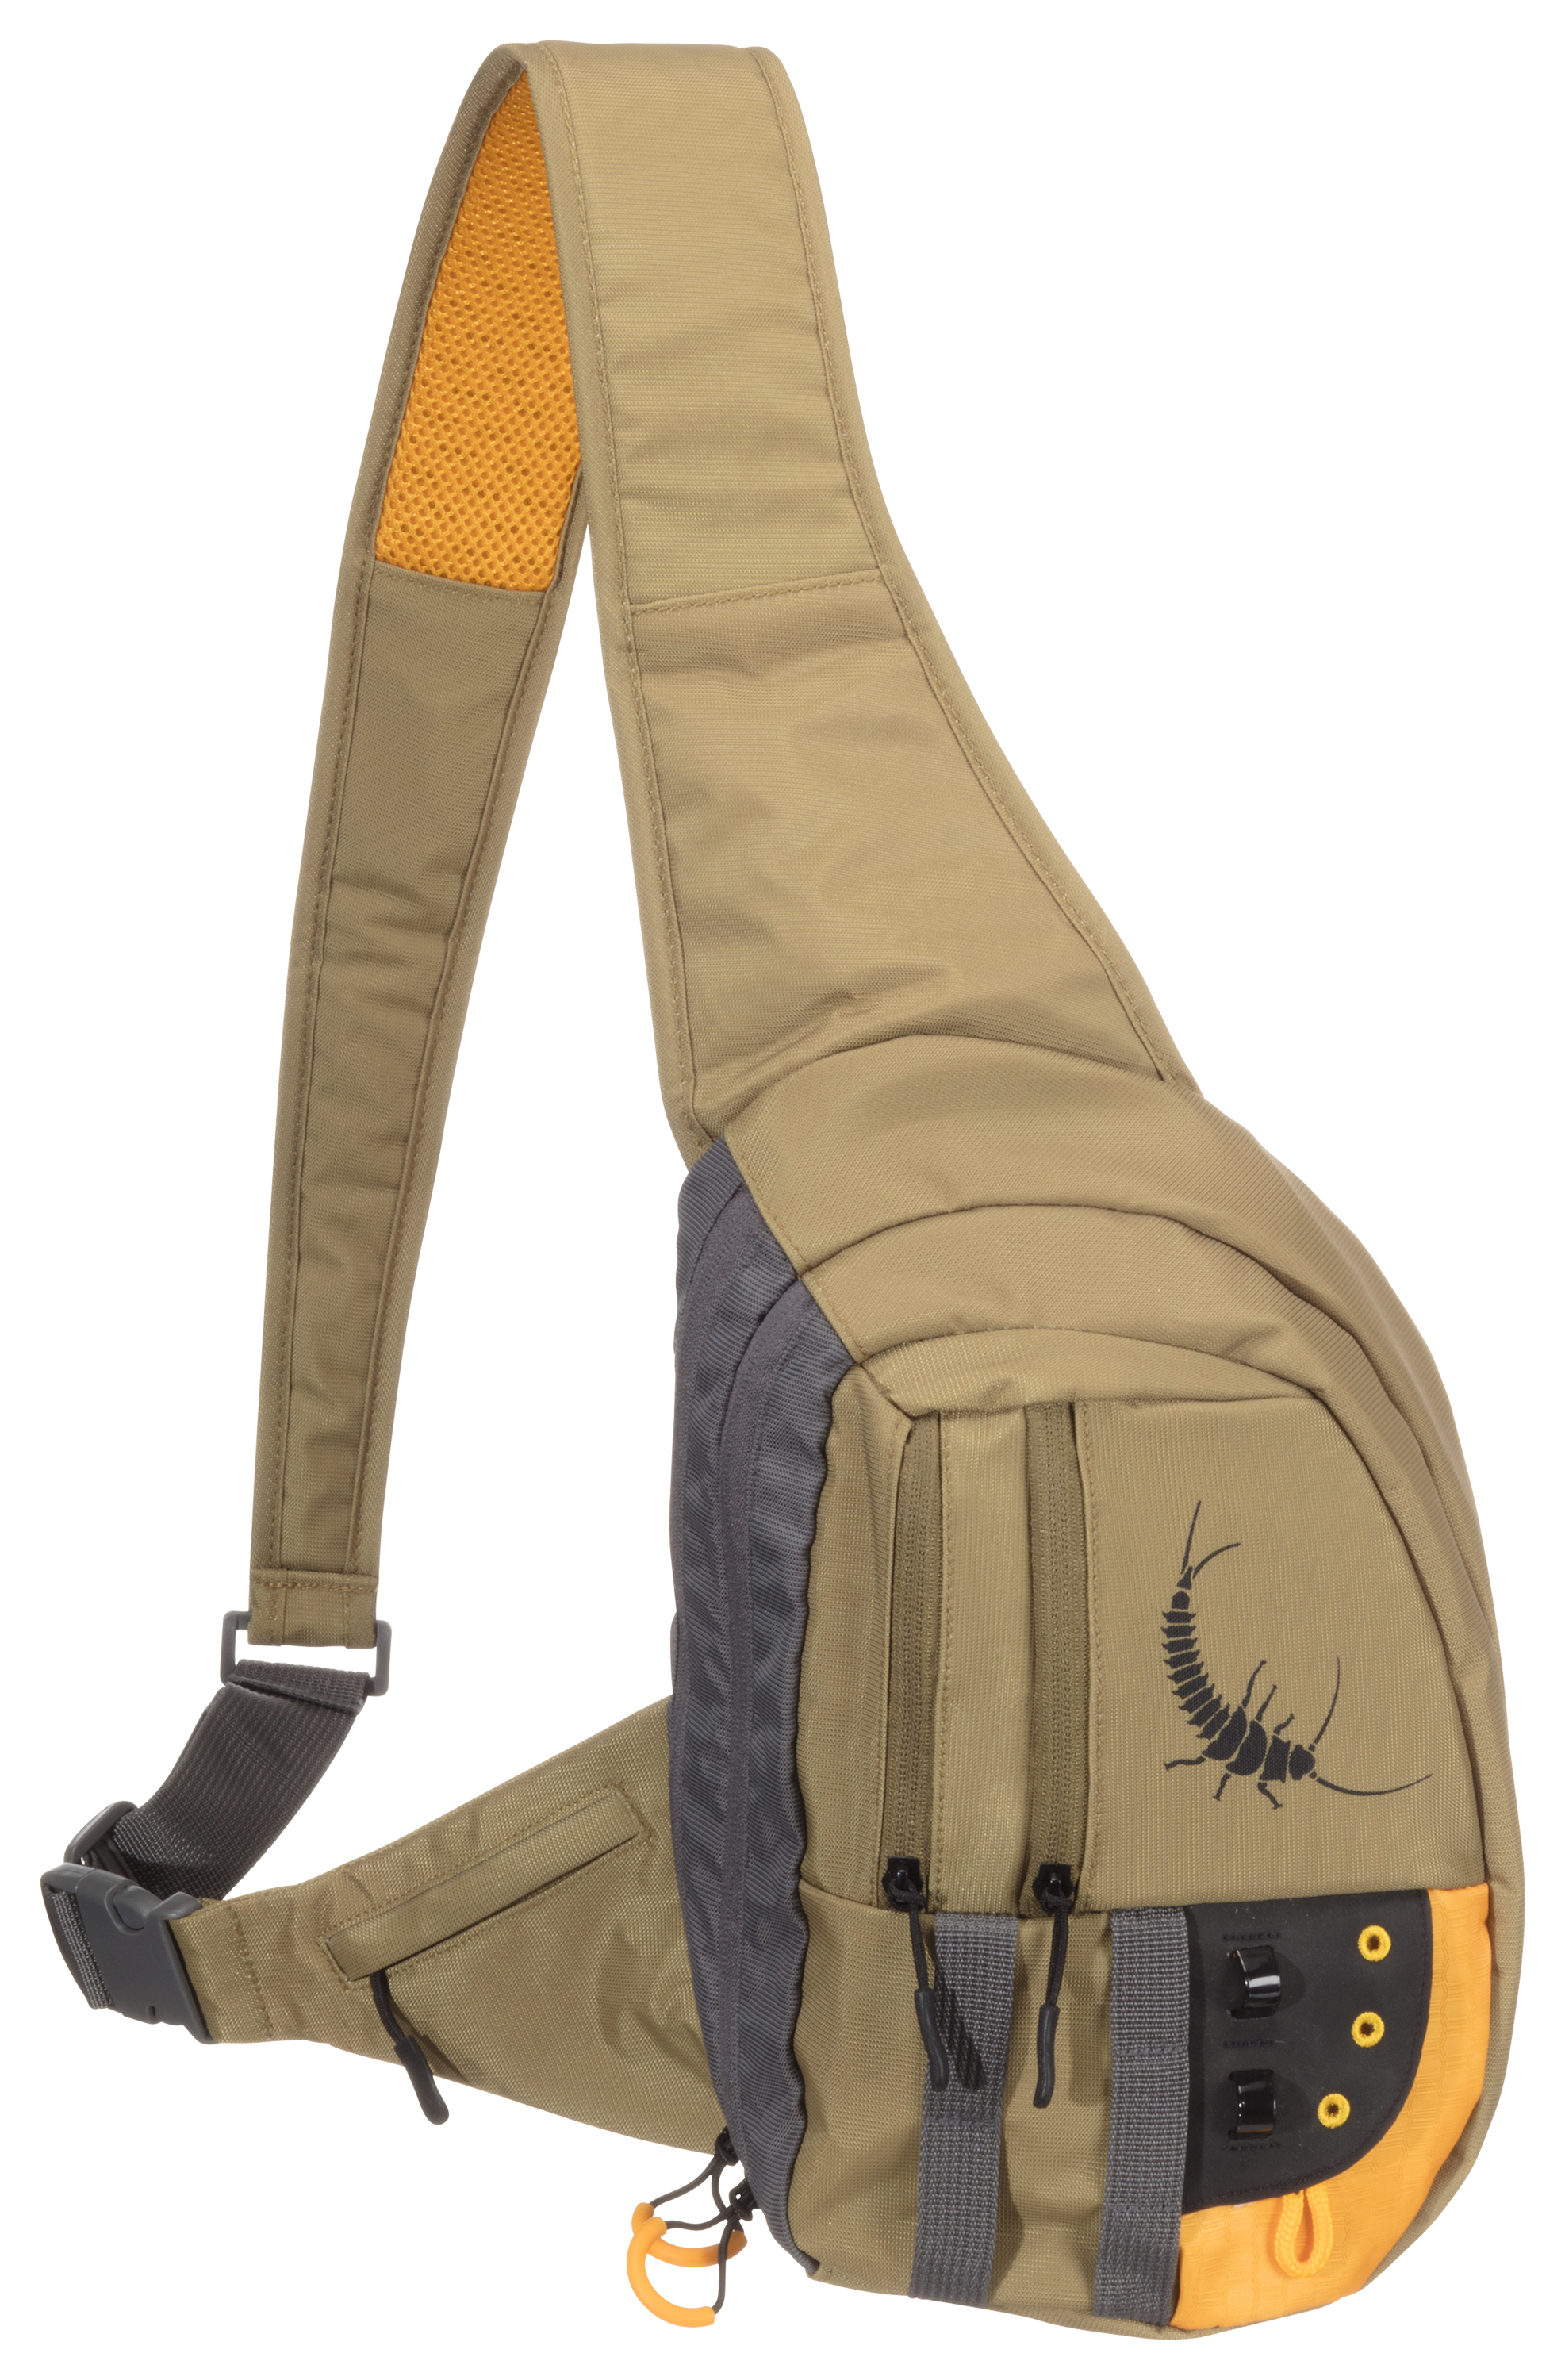 Adjustable Outdoor Fly Fishing Vest Pack Sling Pack Waterproof